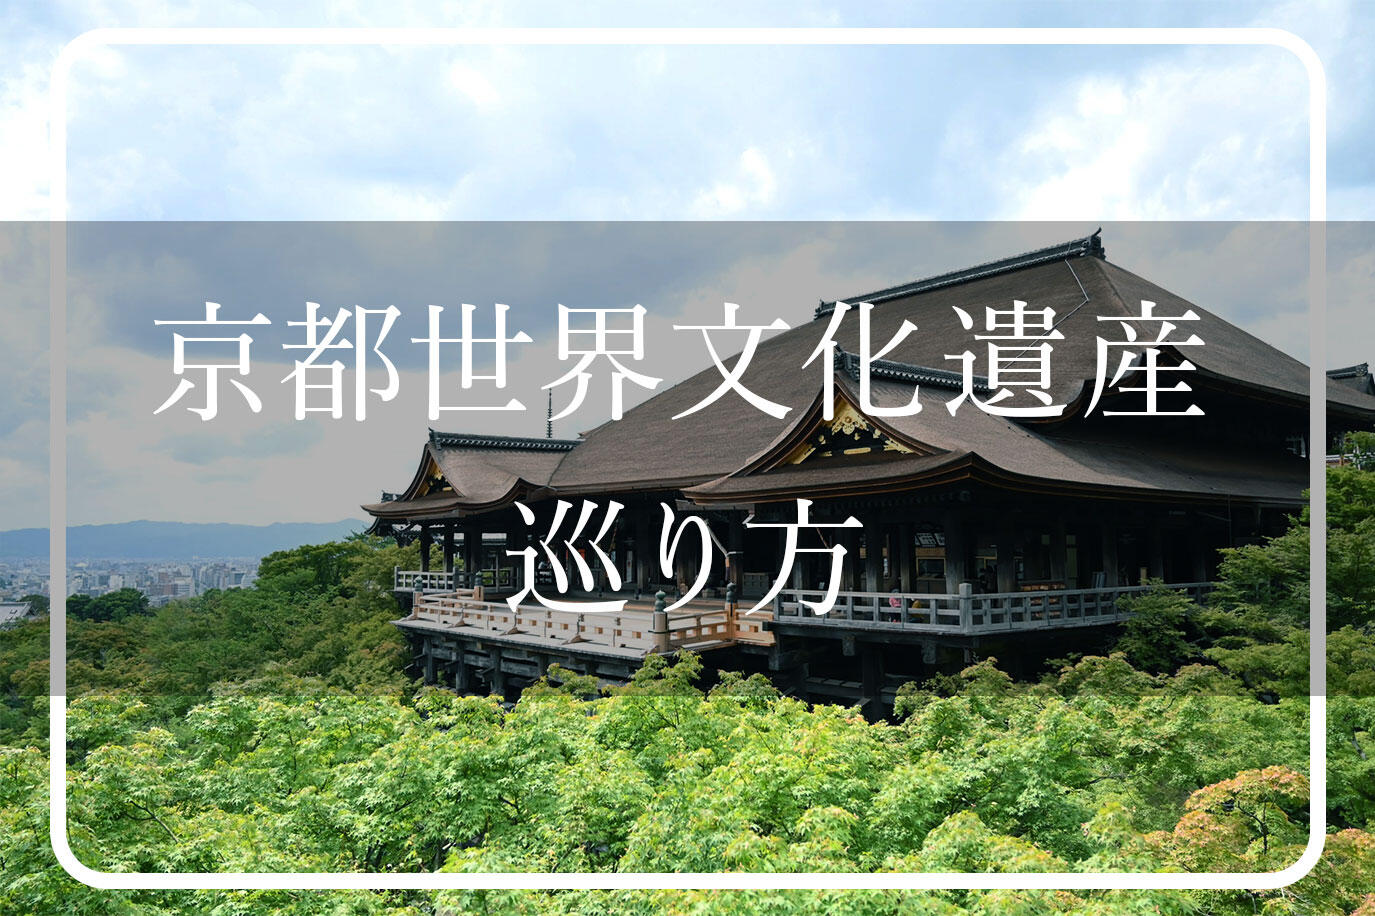 京都世界文化遺産17スポット一覧・めぐり方【解説マップ付き】イメージ>